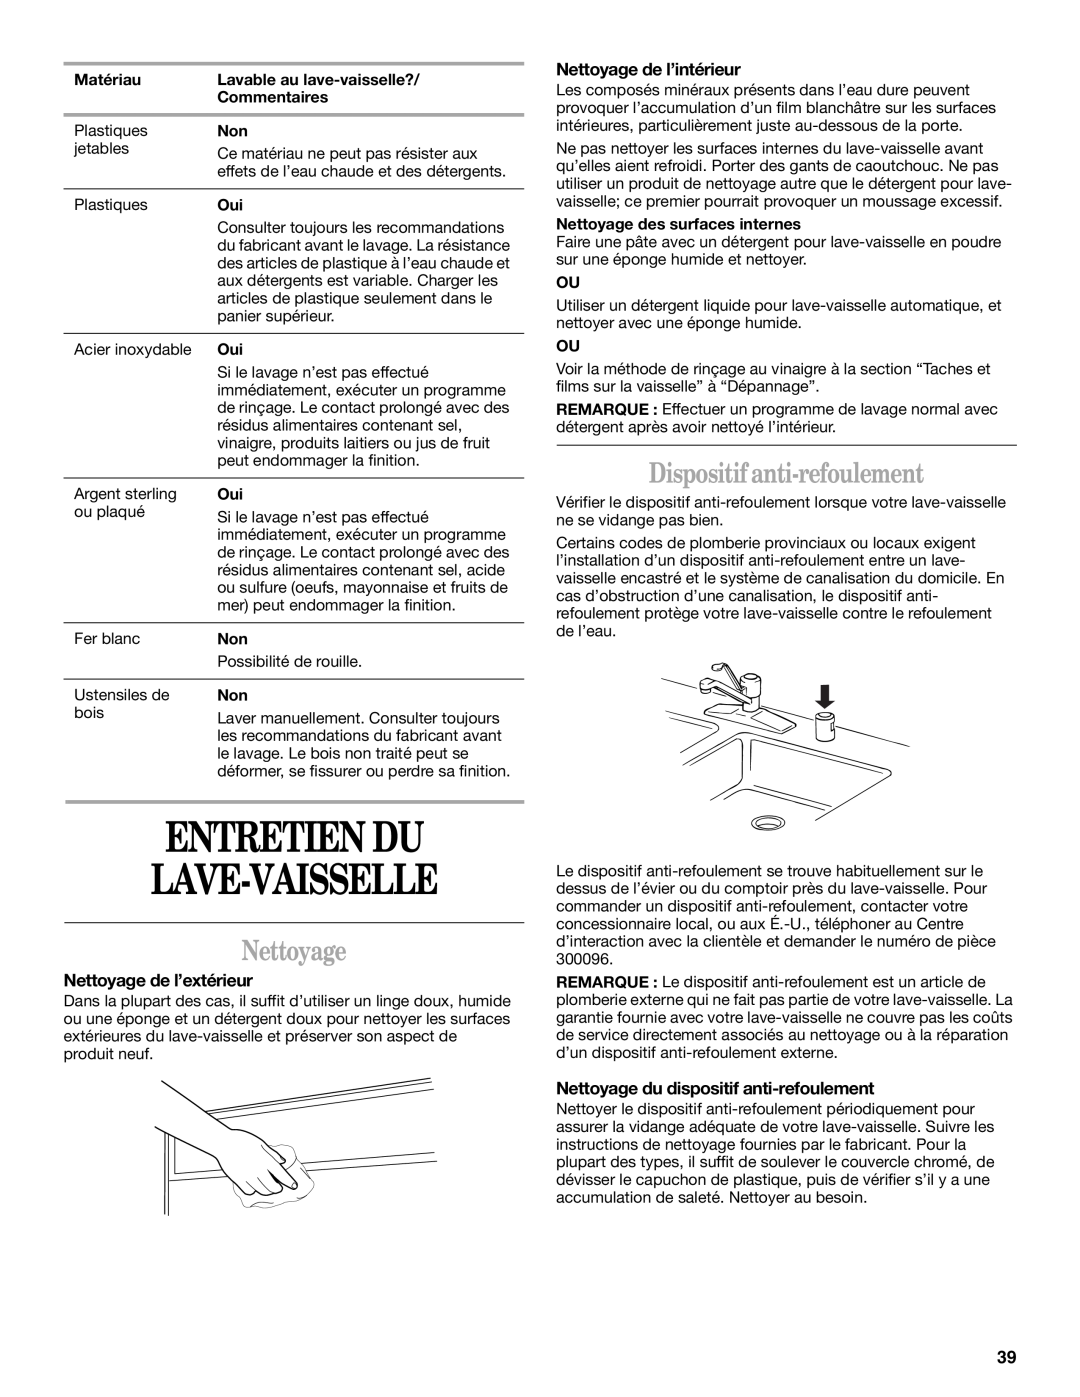 Whirlpool 941, 945 manual Entretien Du Lave-Vaisselle, Dispositif anti-refoulement, Nettoyage de l’extérieur 